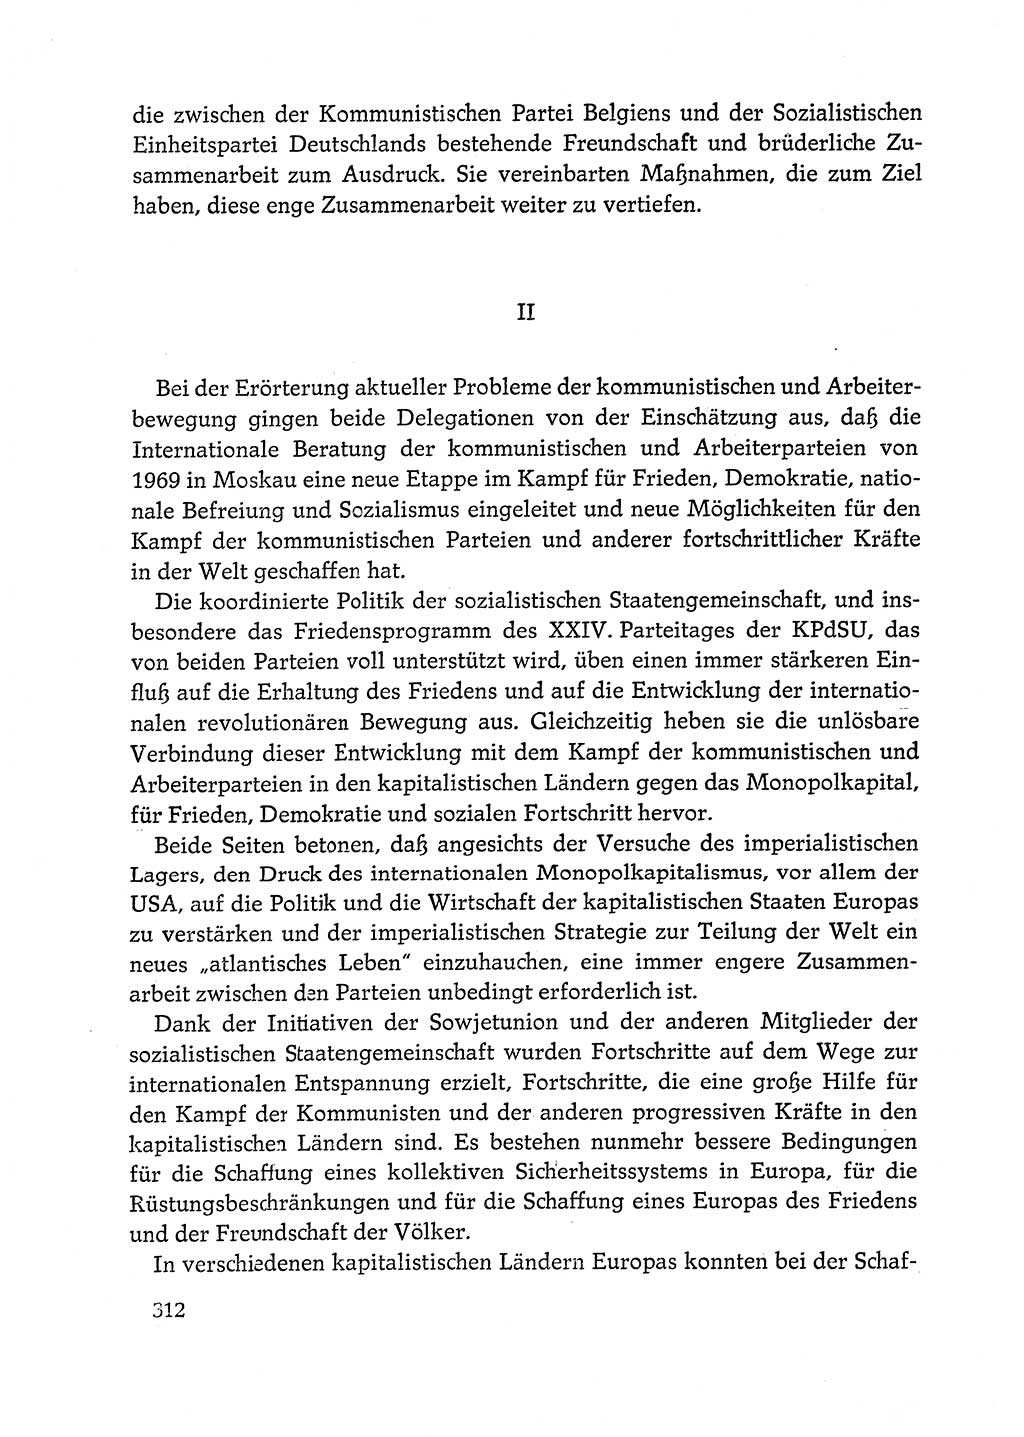 Dokumente der Sozialistischen Einheitspartei Deutschlands (SED) [Deutsche Demokratische Republik (DDR)] 1972-1973, Seite 312 (Dok. SED DDR 1972-1973, S. 312)